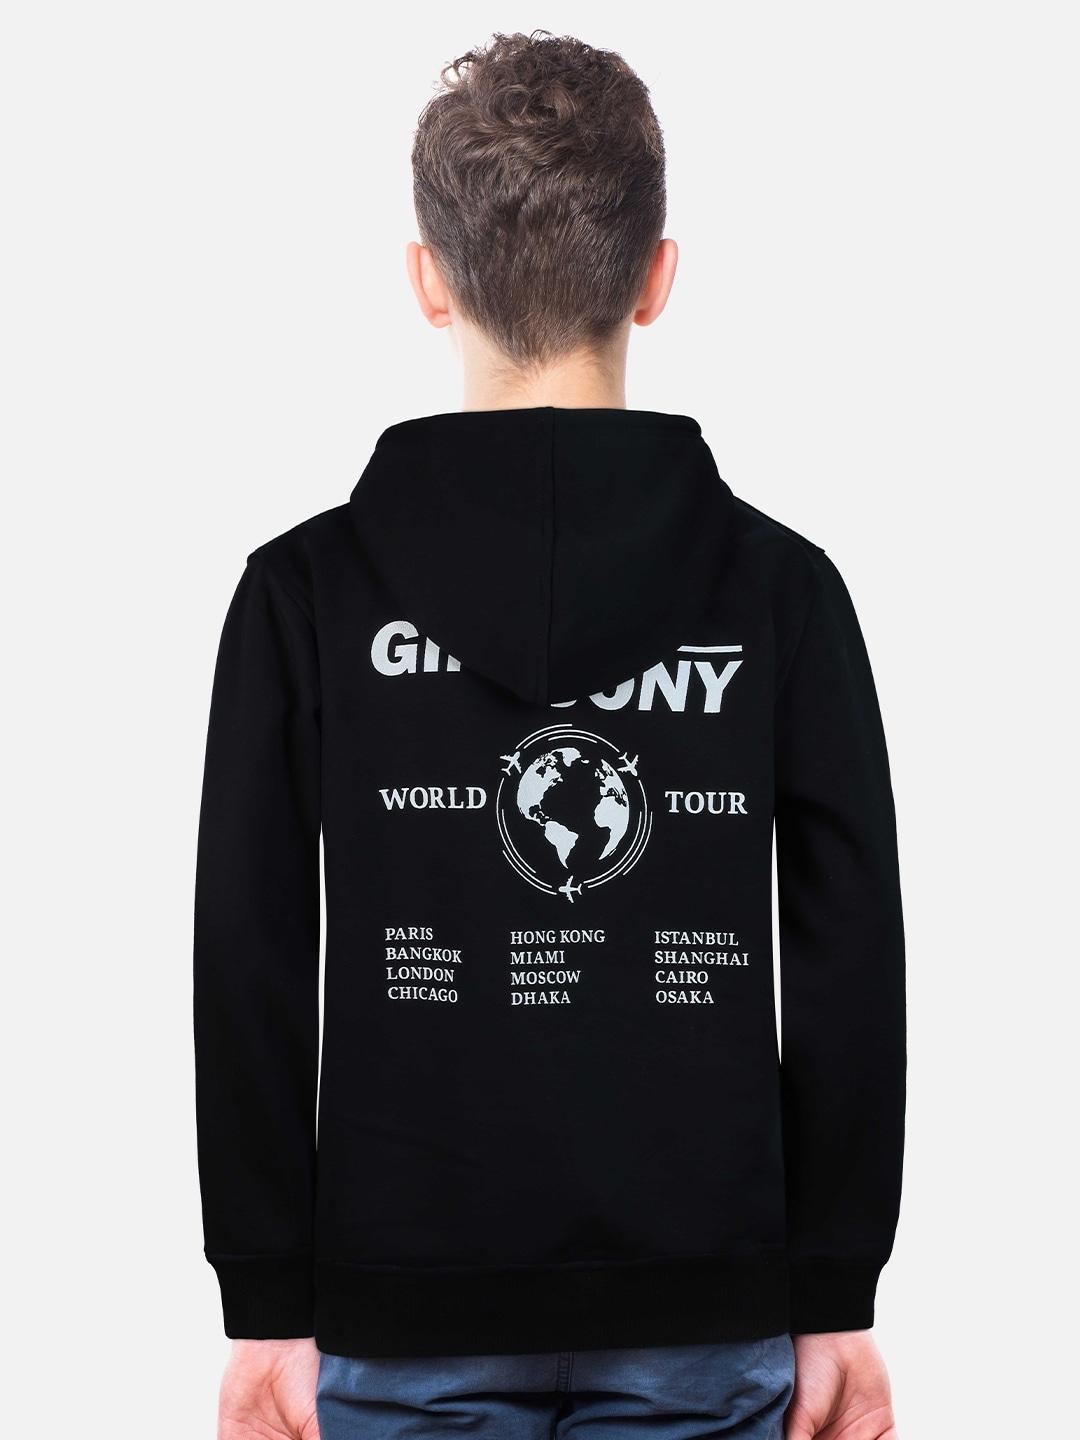 gini-and-jony-boys-typography-printed-hooded-cotton-sweatshirt